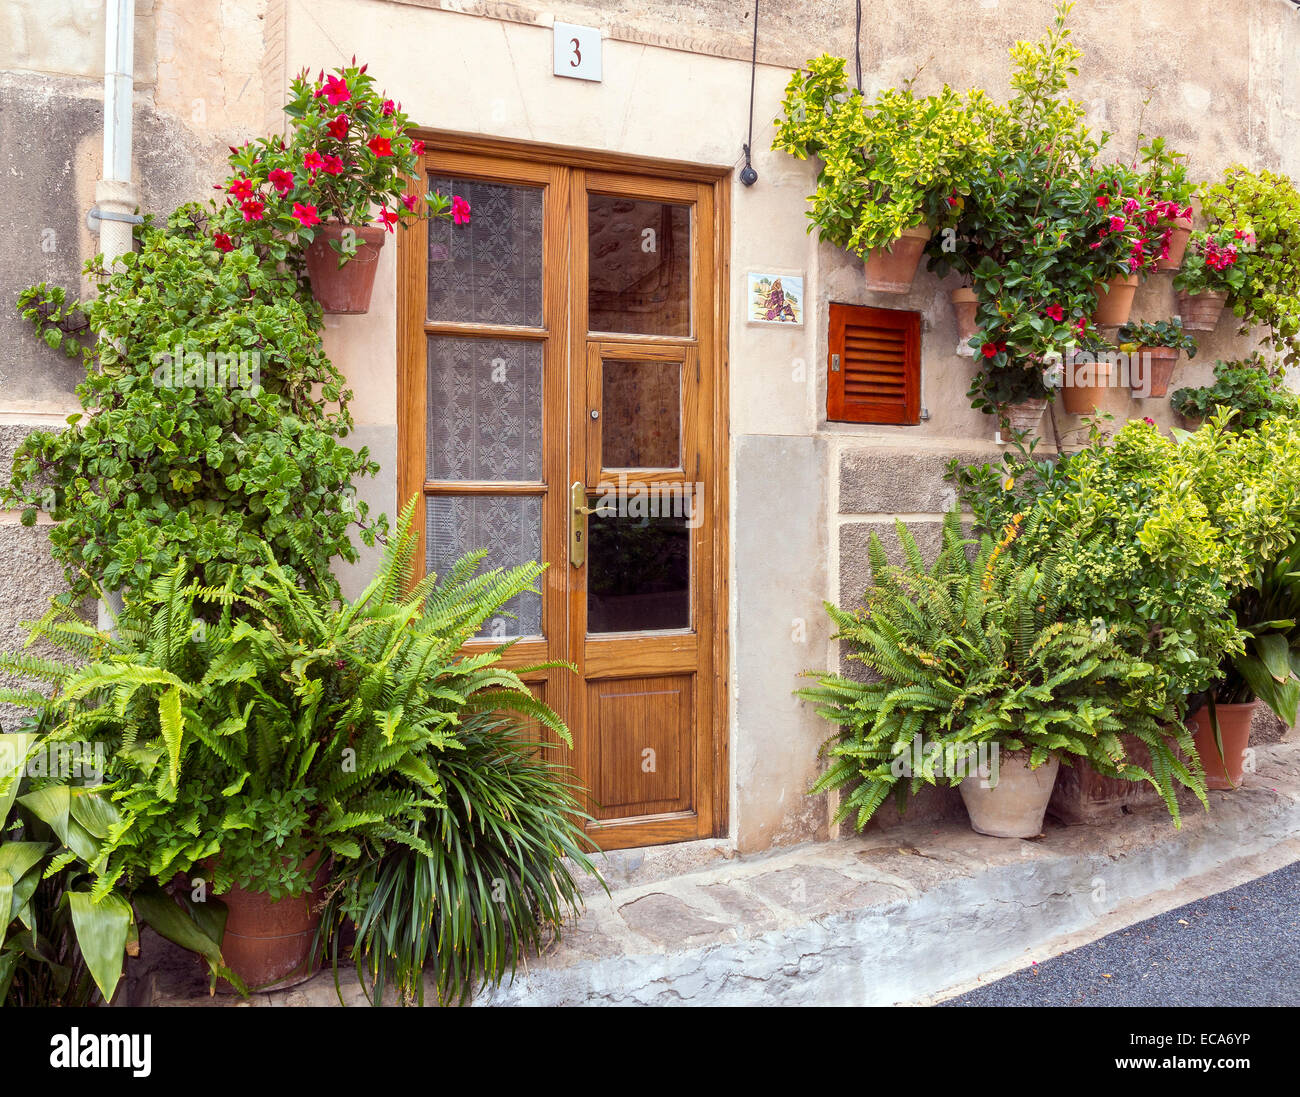 Entrée privée, entourée de fleurs et plantes en pot, Palma, Majorque, Îles Baléares, Espagne Banque D'Images